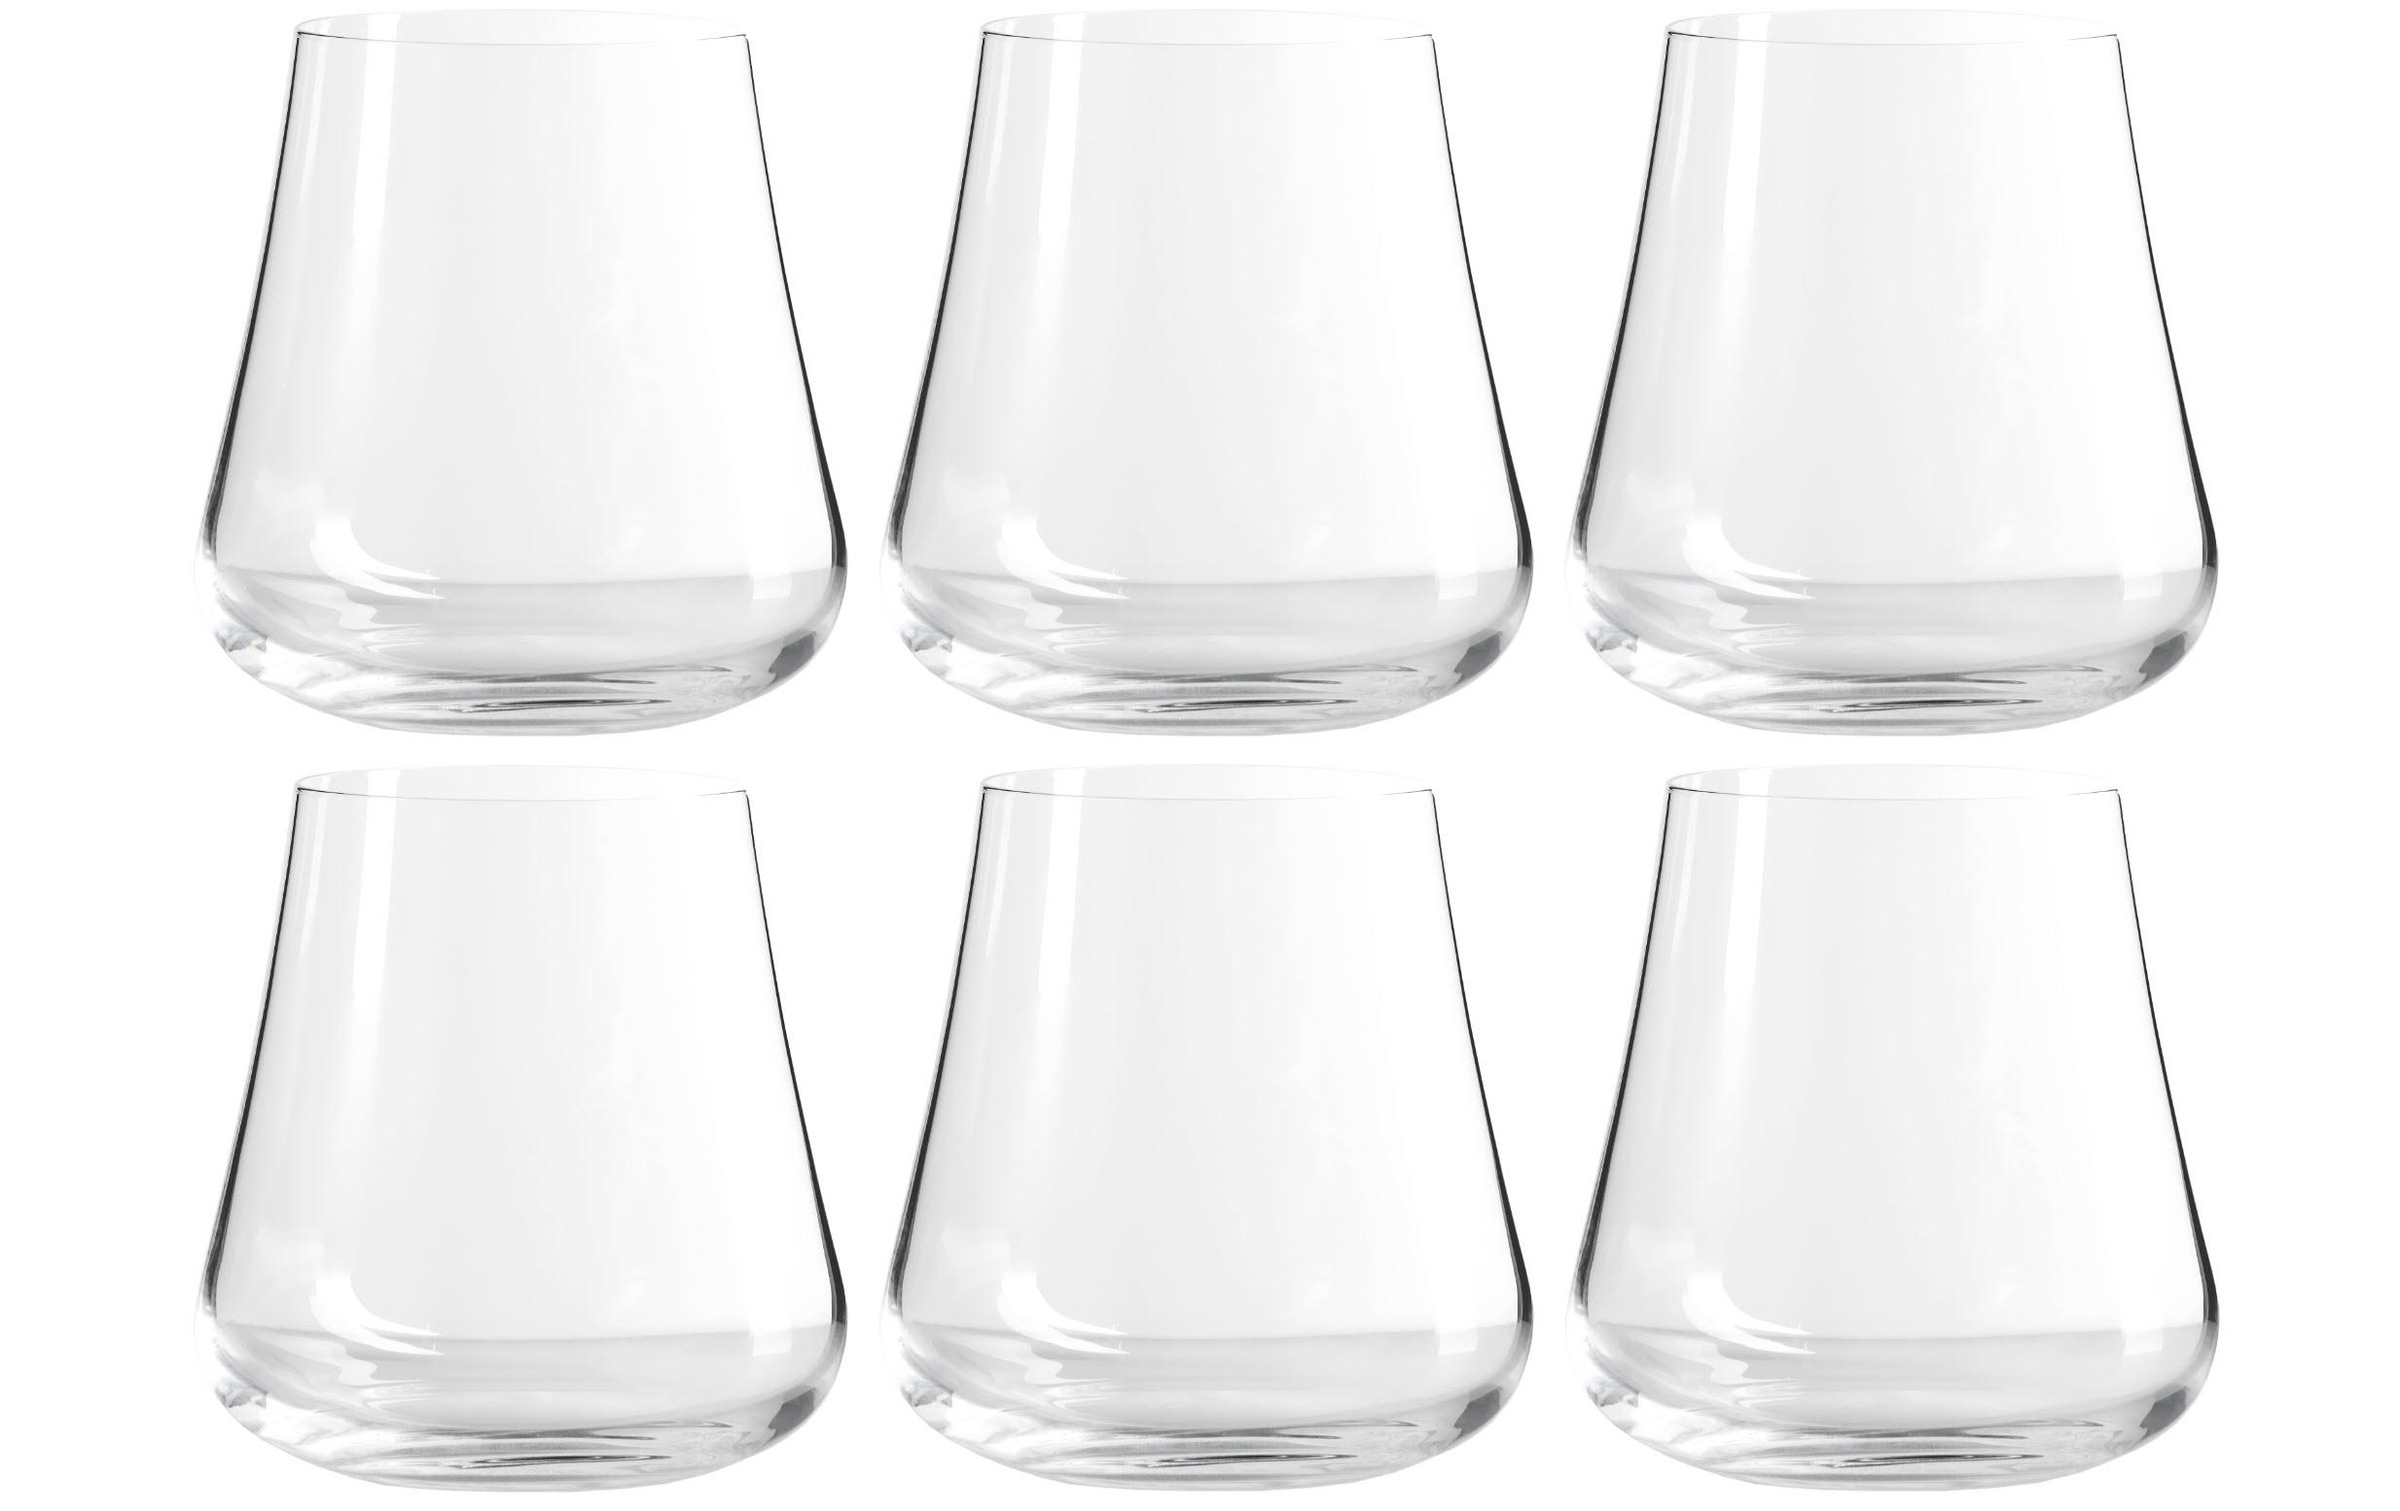 6 x Hella Mineralbrunnen Glas Gläser Trinkglas Wasserglas weiße Schrift 0,2l 